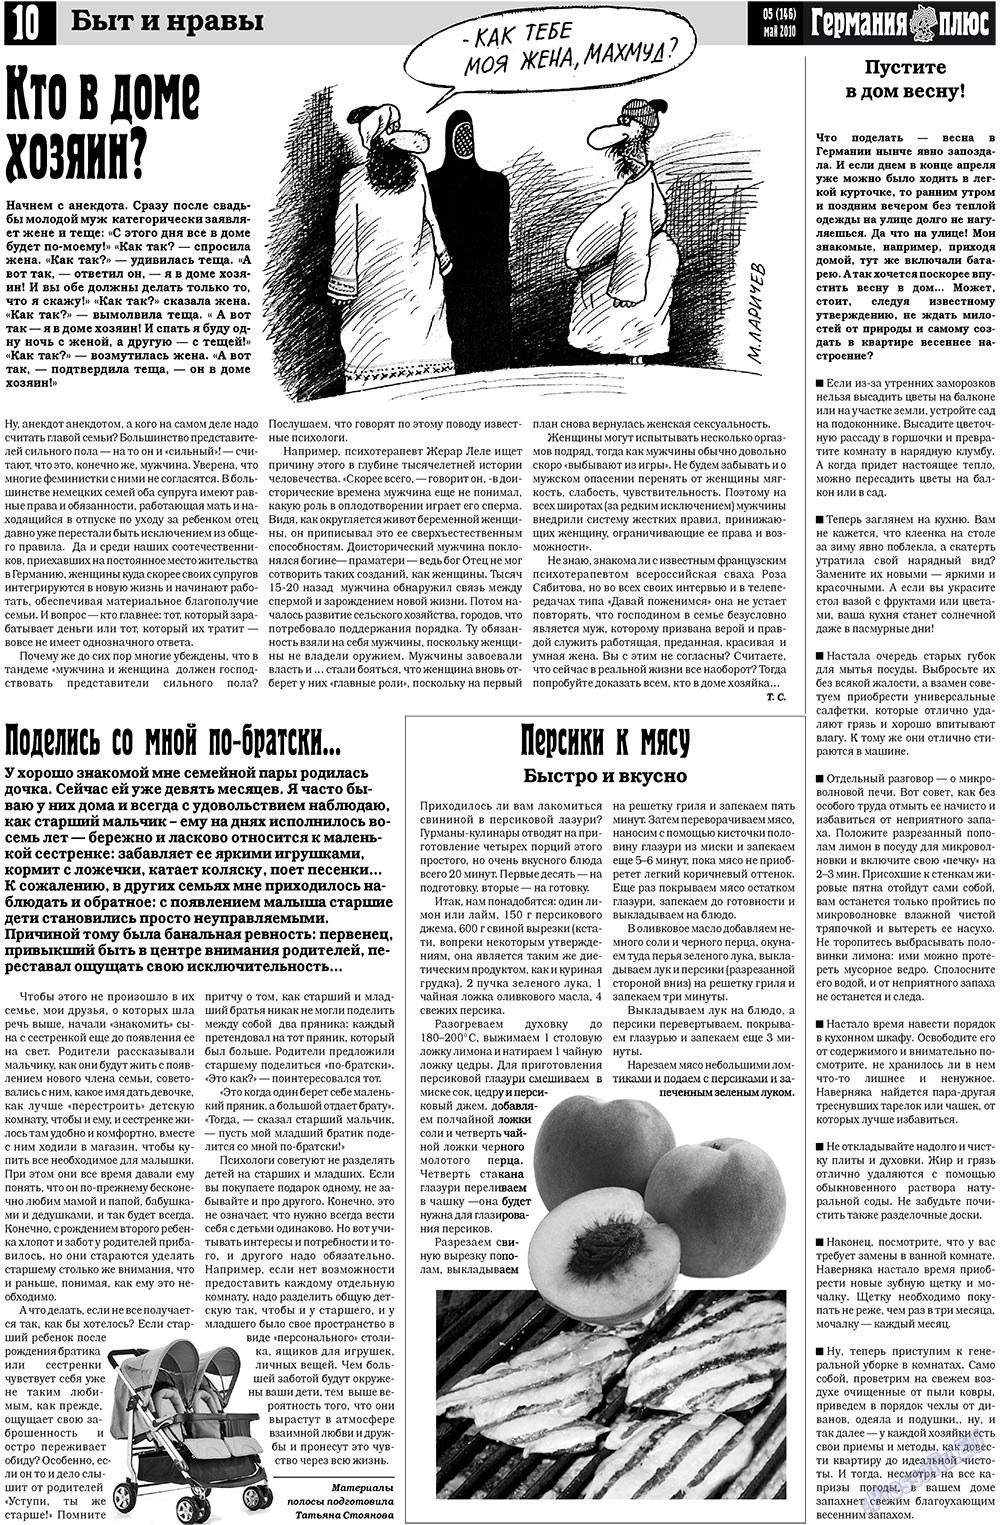 Германия плюс, газета. 2010 №5 стр.10